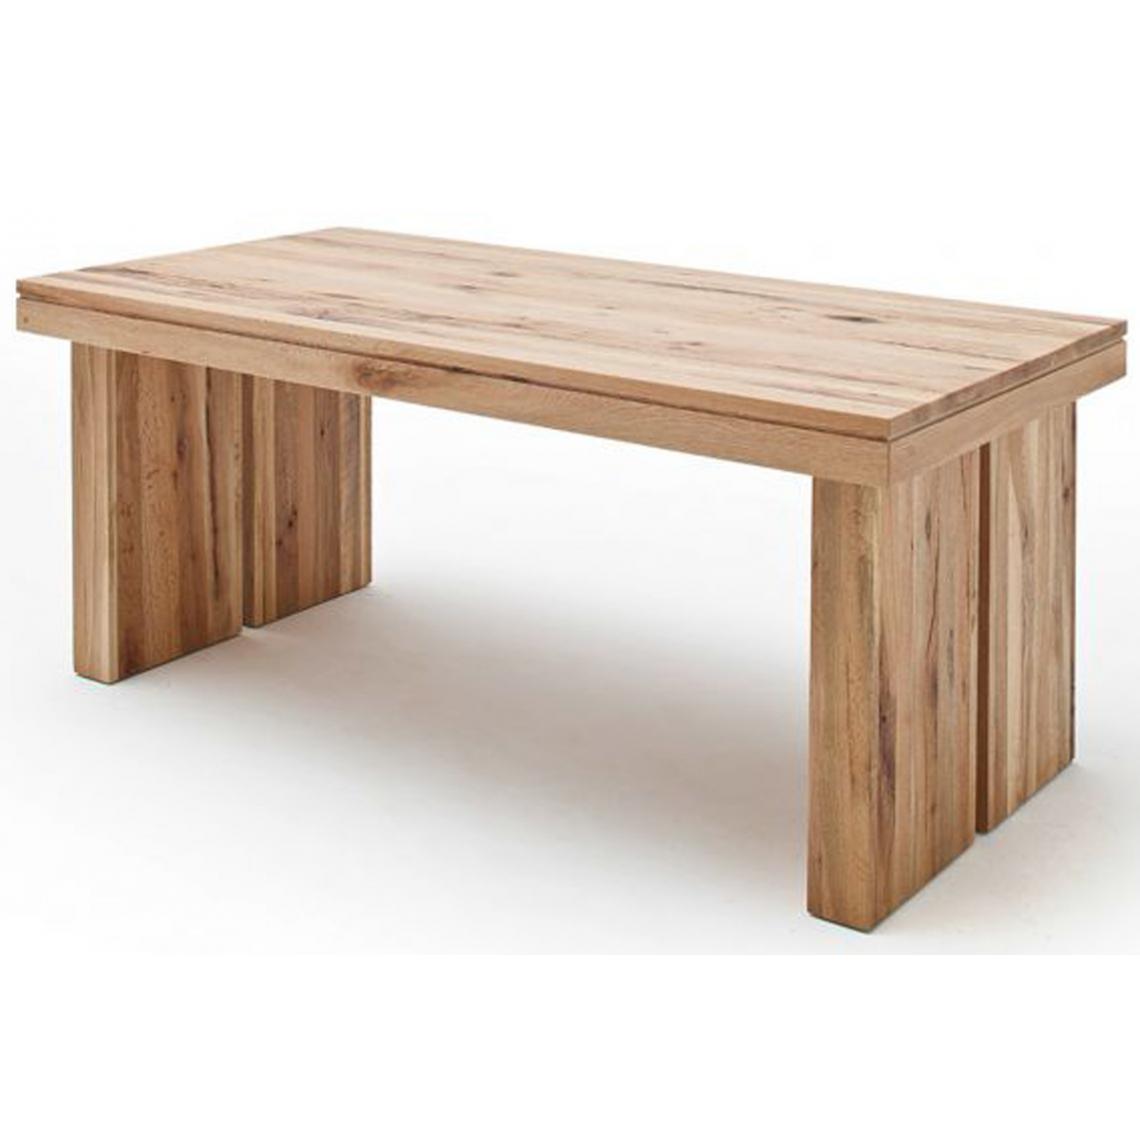 Pegane - Table à manger rectangulaire en chêne sauvage laqué mat massif - L.220 x H.76 x P.100 cm - Tables à manger